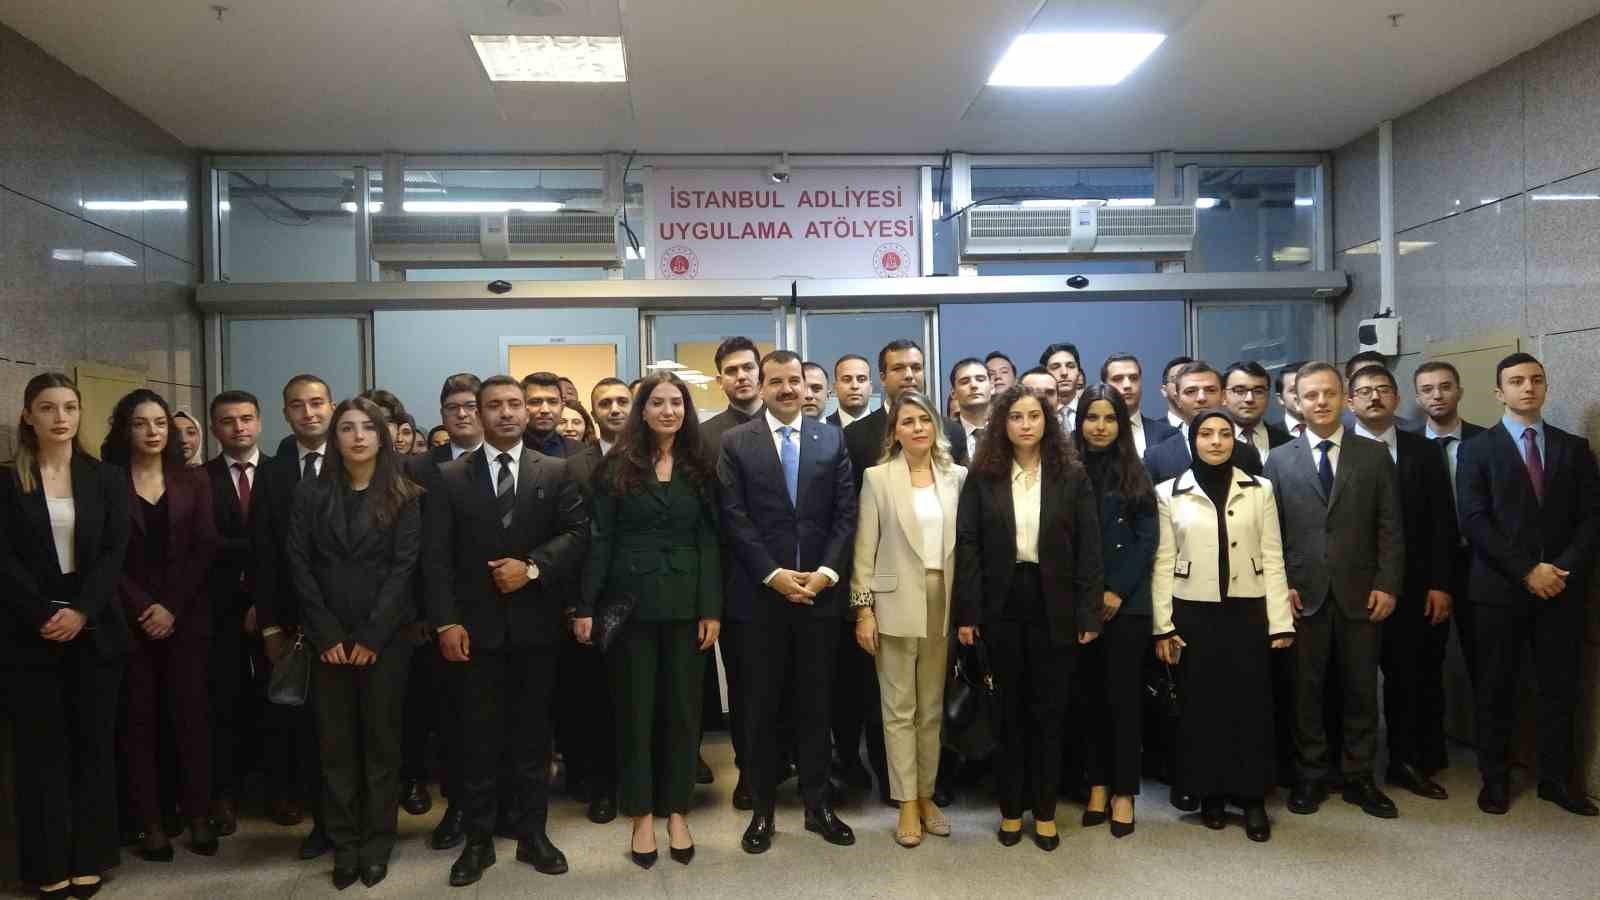 İstanbul Adliyesi Uygulama Atölyesi açıldı
